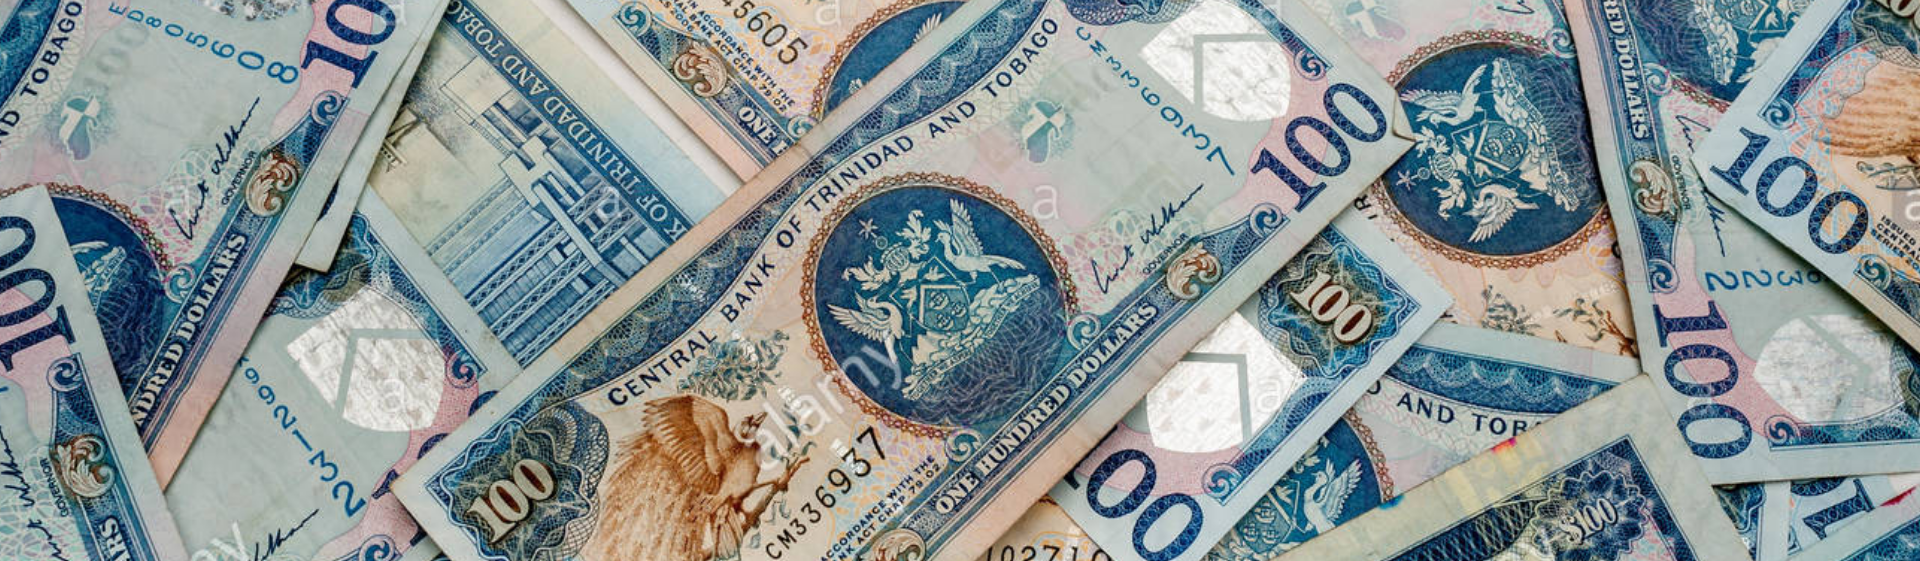 Trinidad and Tobago Dollars